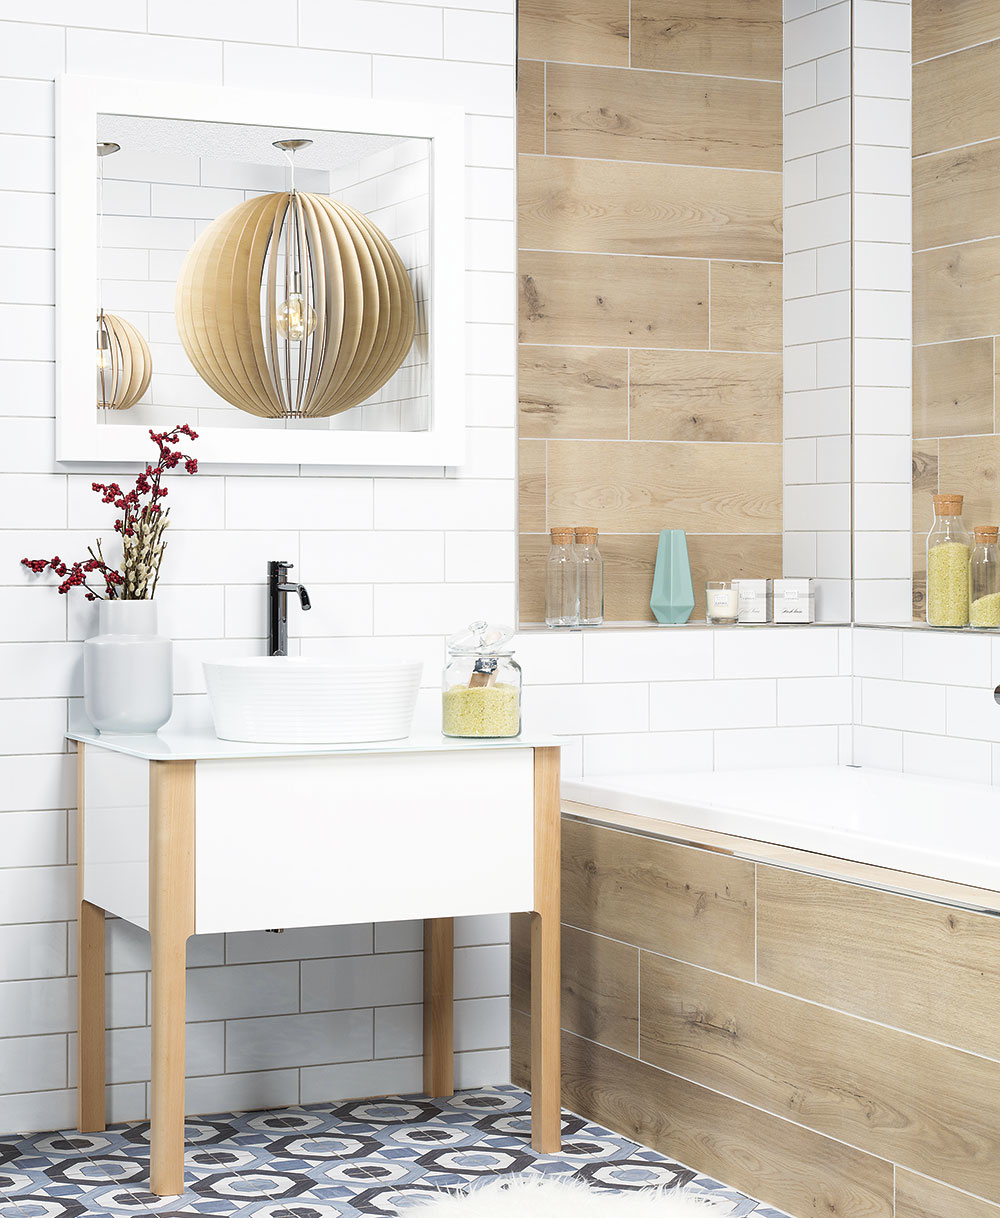 Ak radi kombinujete čistý dizajn s jednoduchosťou, funkčnosťou a praktickosťou, potom sa vám bude páčiť koncept škandinávskej kúpeľne od Siko.